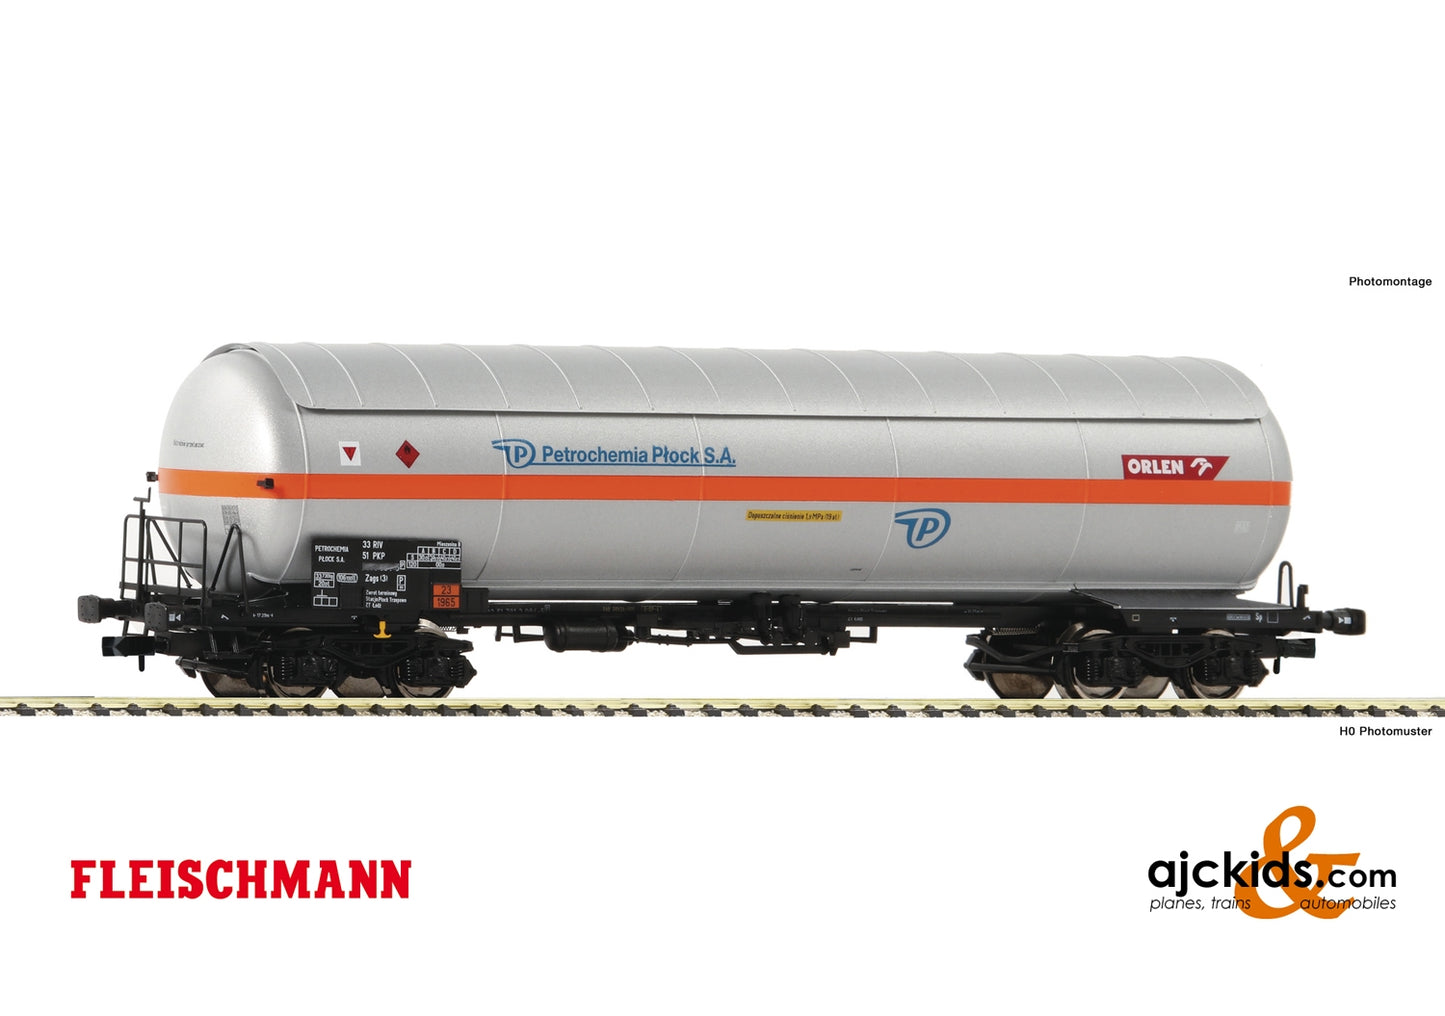 Fleischmann 849104 - Pressure gas tank wagon